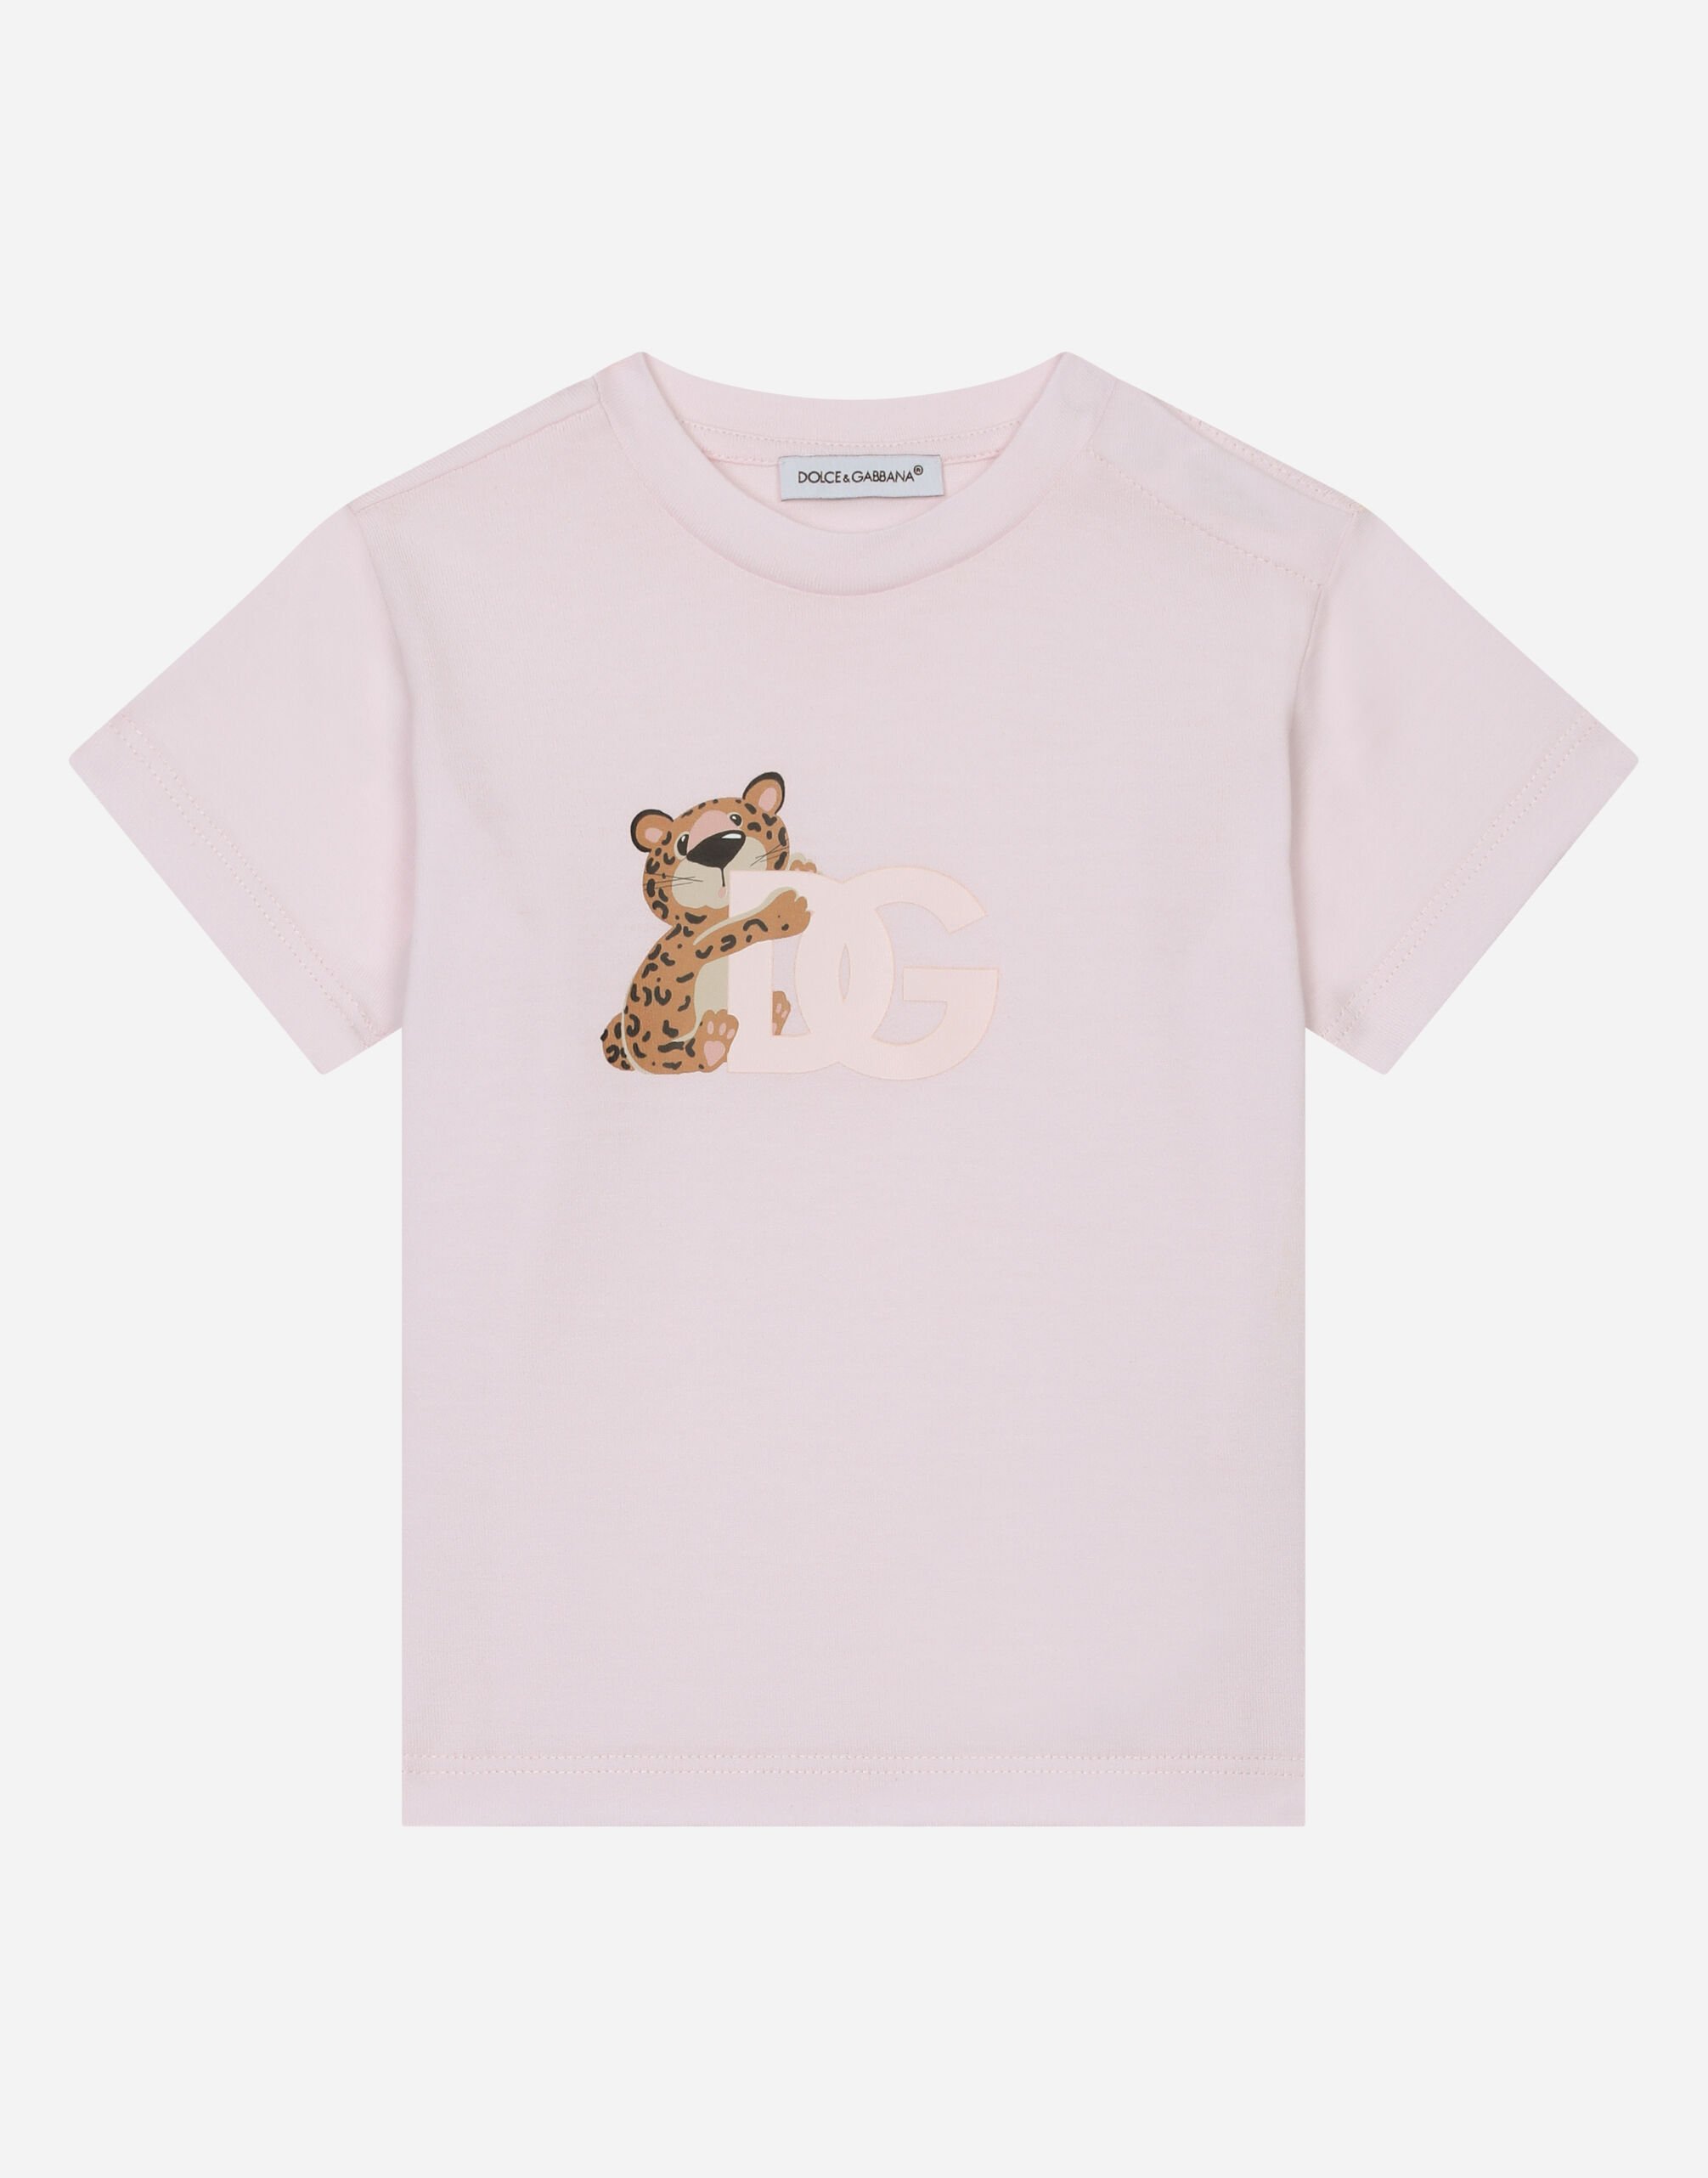 Dolce & Gabbana Jersey T-shirt with DG logo baby leopard print Pink DK0065A1293